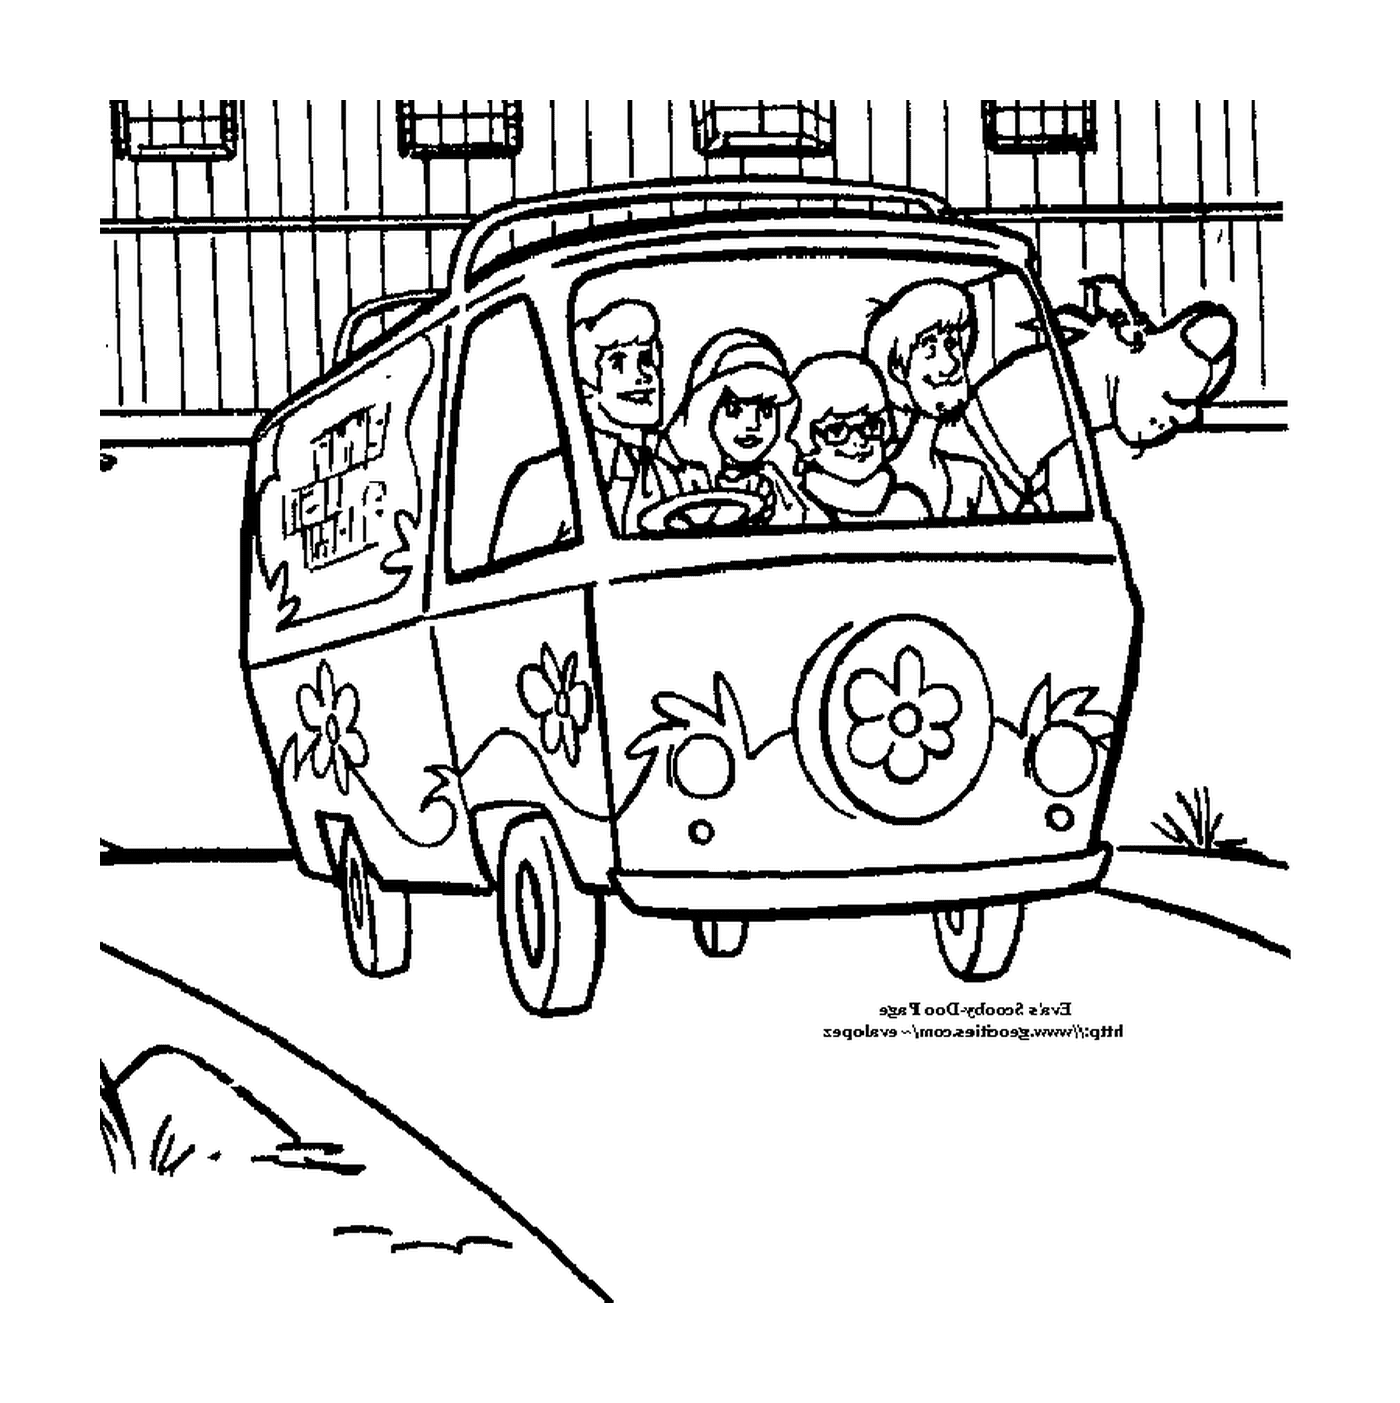   Une camionnette avec des personnes à l'intérieur 